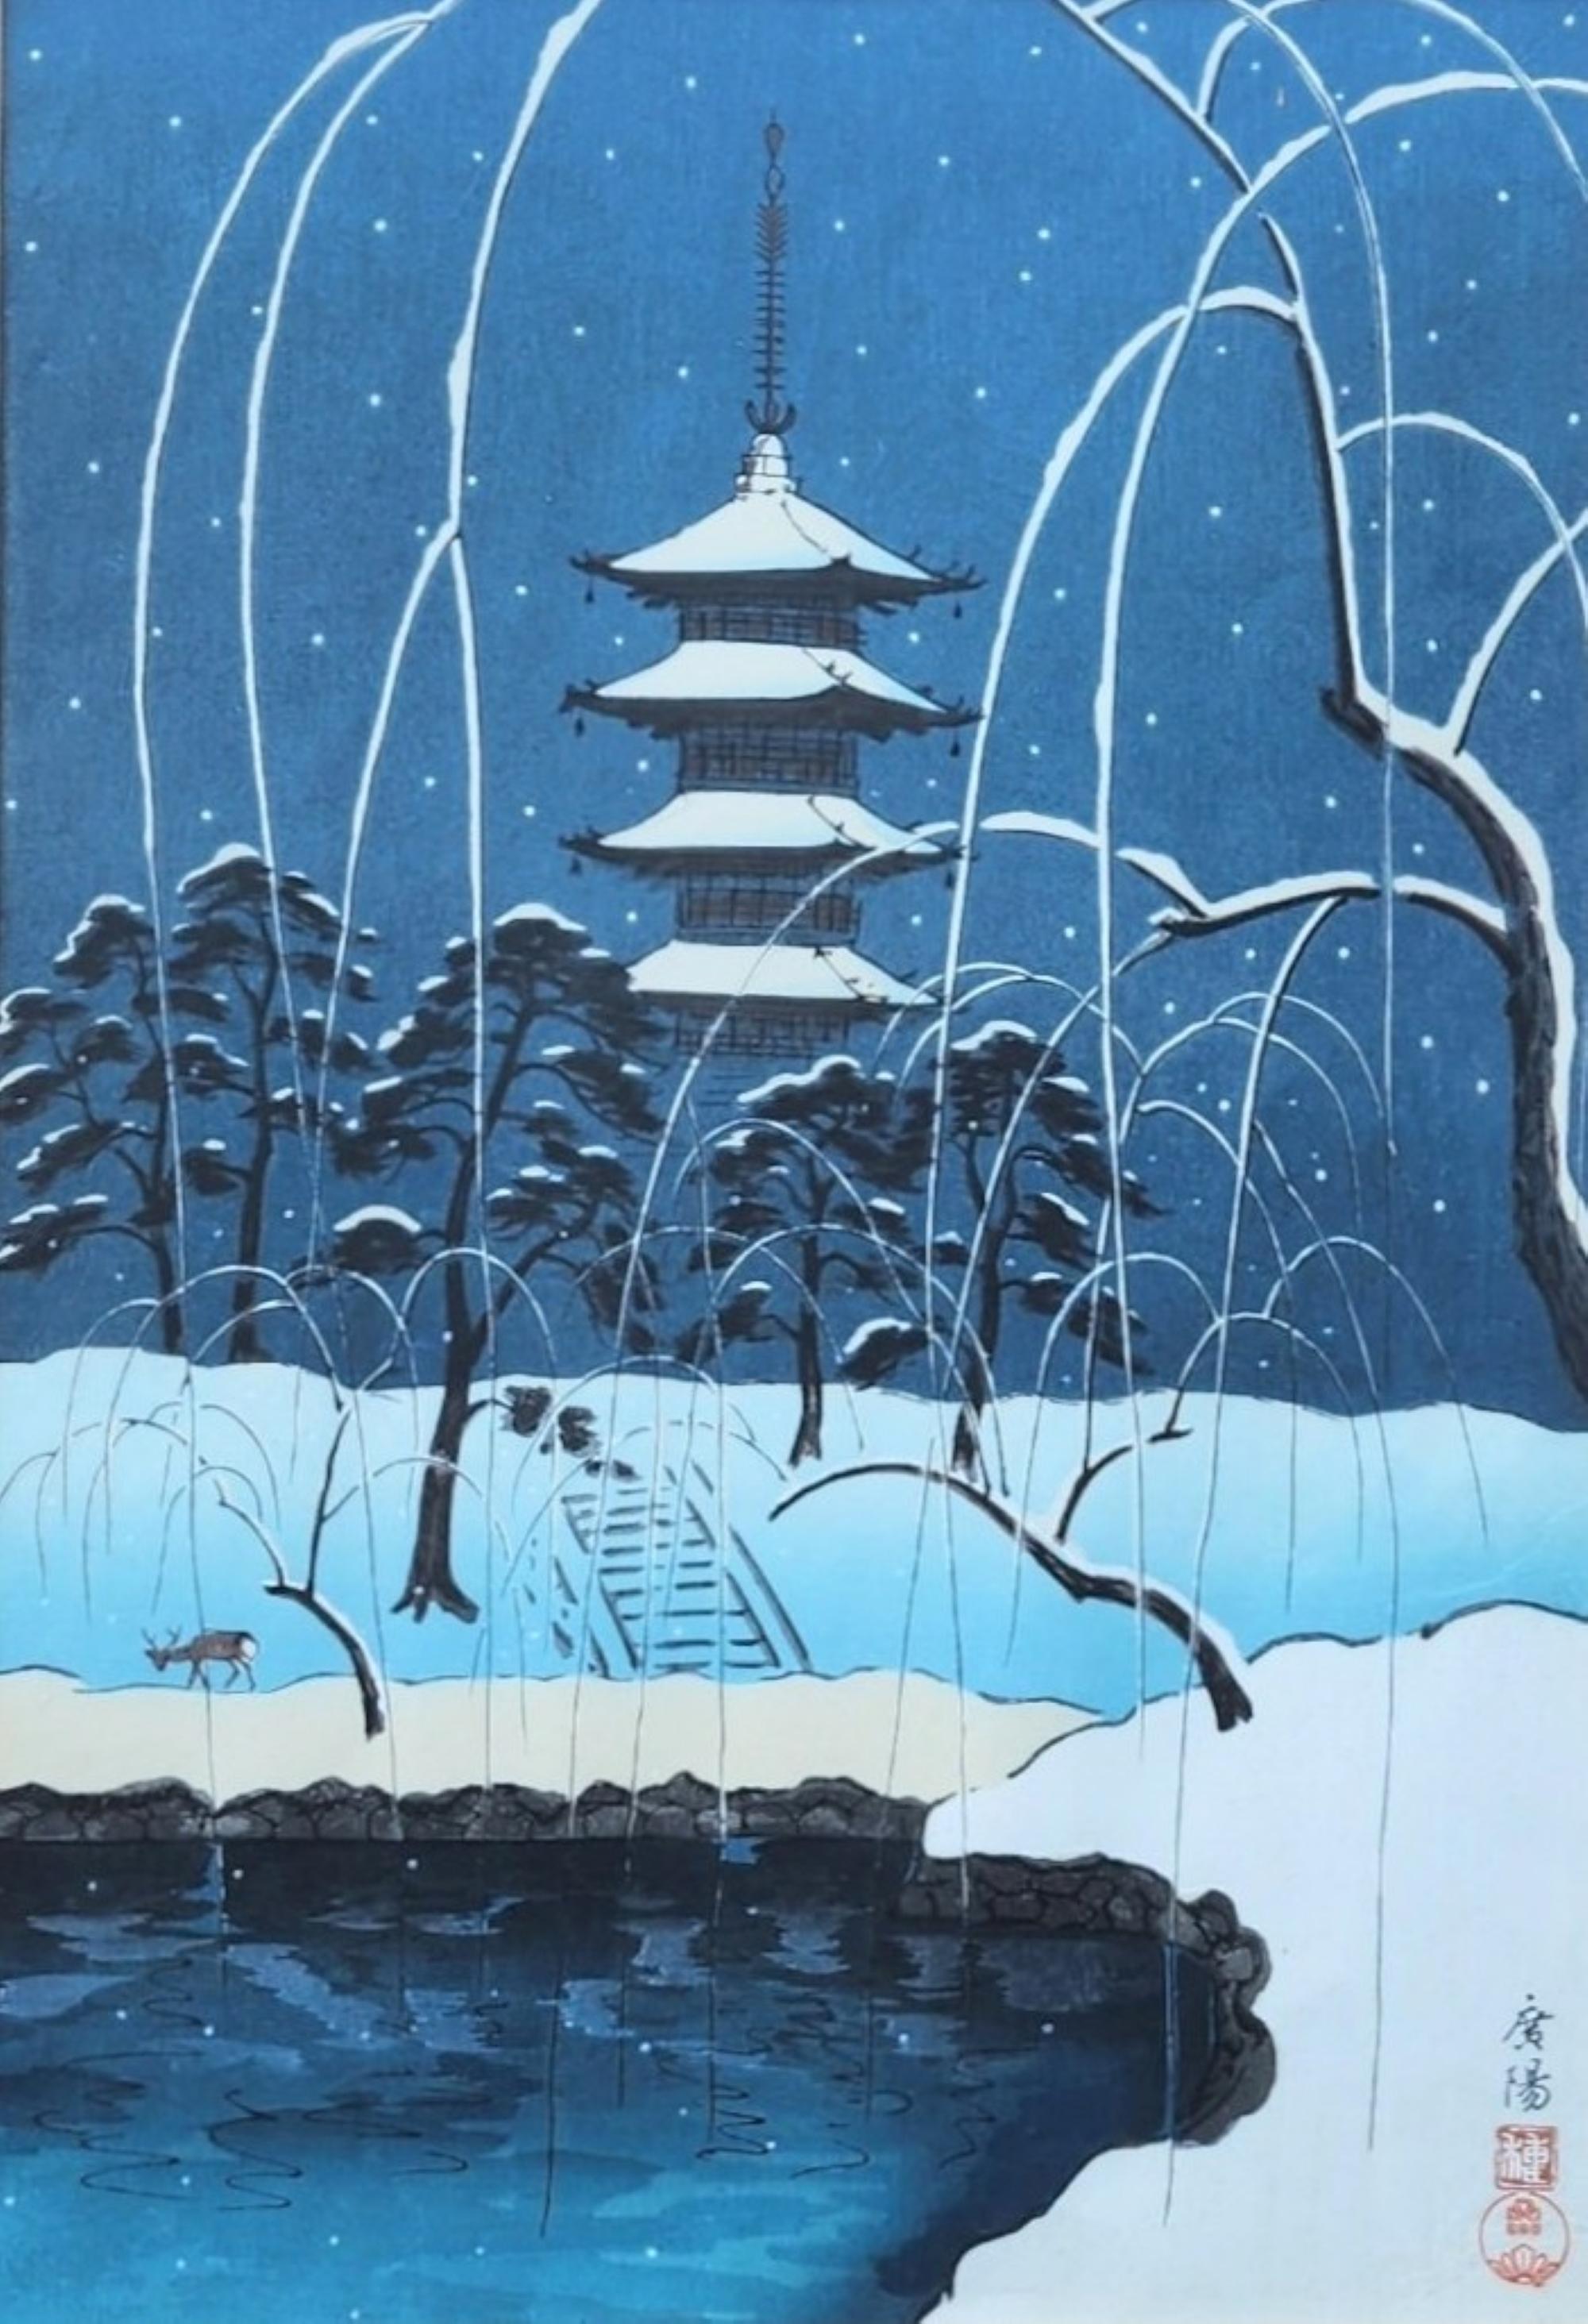 Koyo Omura (Japaner, 1891 - 1983)

Unterzeichnet: Unten, rechts

Pagode in Nara im Winter, ca. 1940er - 1950er Jahre

Farbholzschnitt

Größe der Seite: 15" x 10 3/8"

Untergebracht in einem 1"-Rahmen mit Anti-Glare-Glas

Gesamtgröße: 25 3/4" x 19